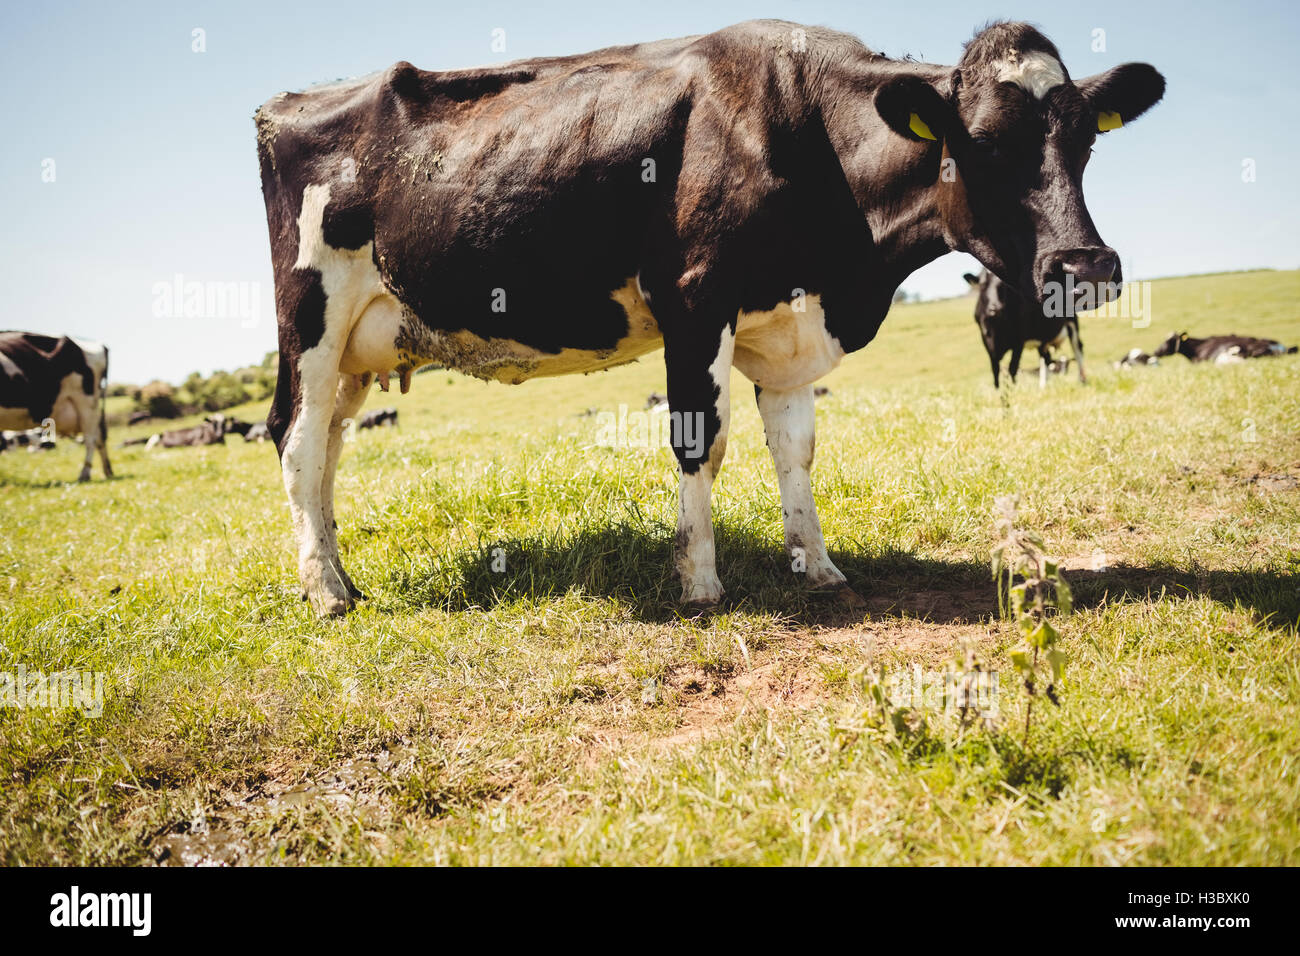 Cow standing sur le terrain herbeux Banque D'Images